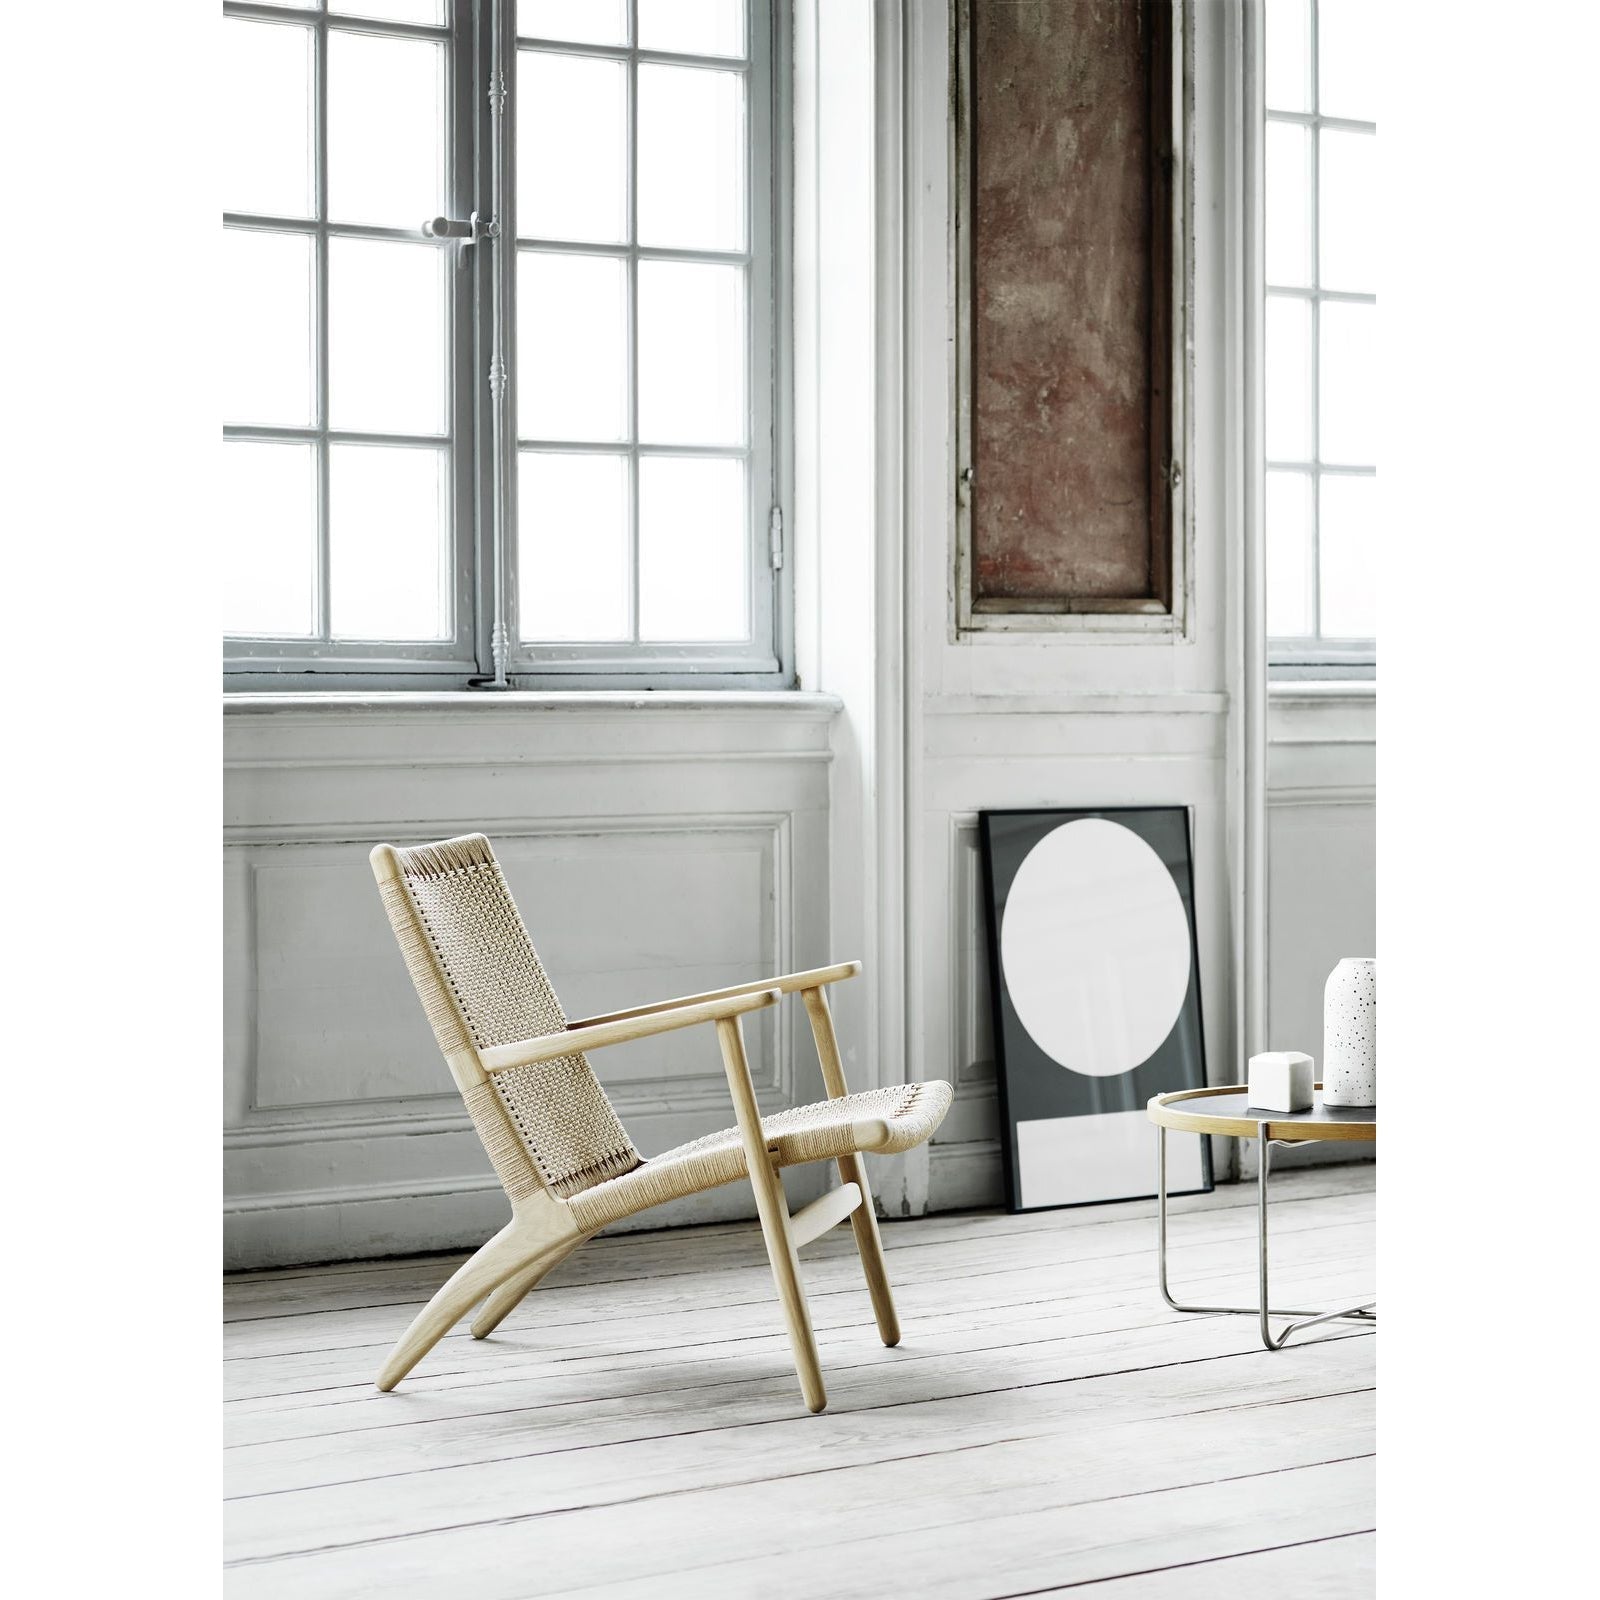 Carl Hansen CH25 Lounge -stol, tvålad ek/naturlig